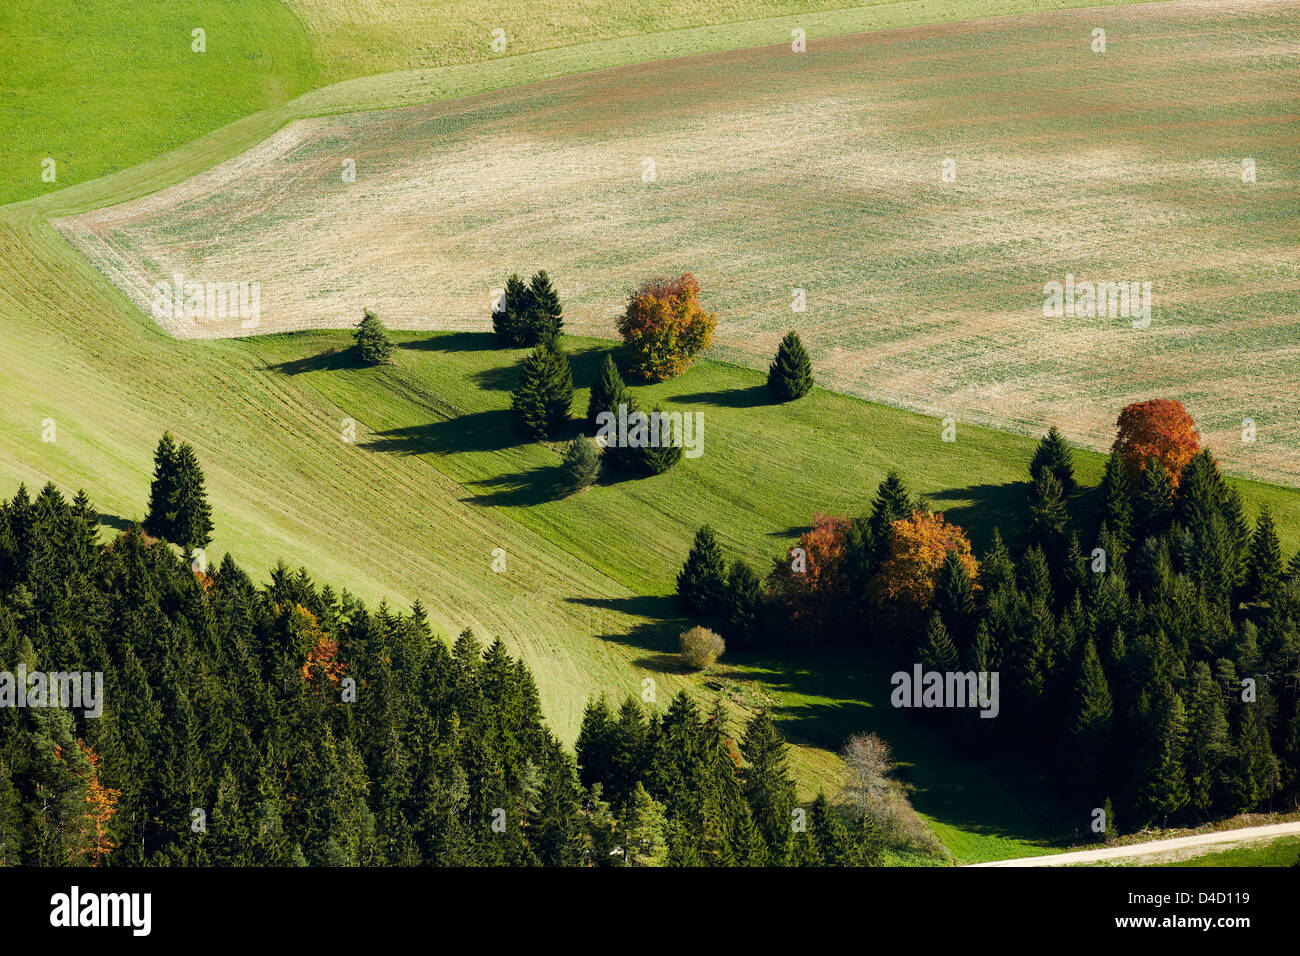 El grupo de árboles en un campo, foto aérea Foto de stock